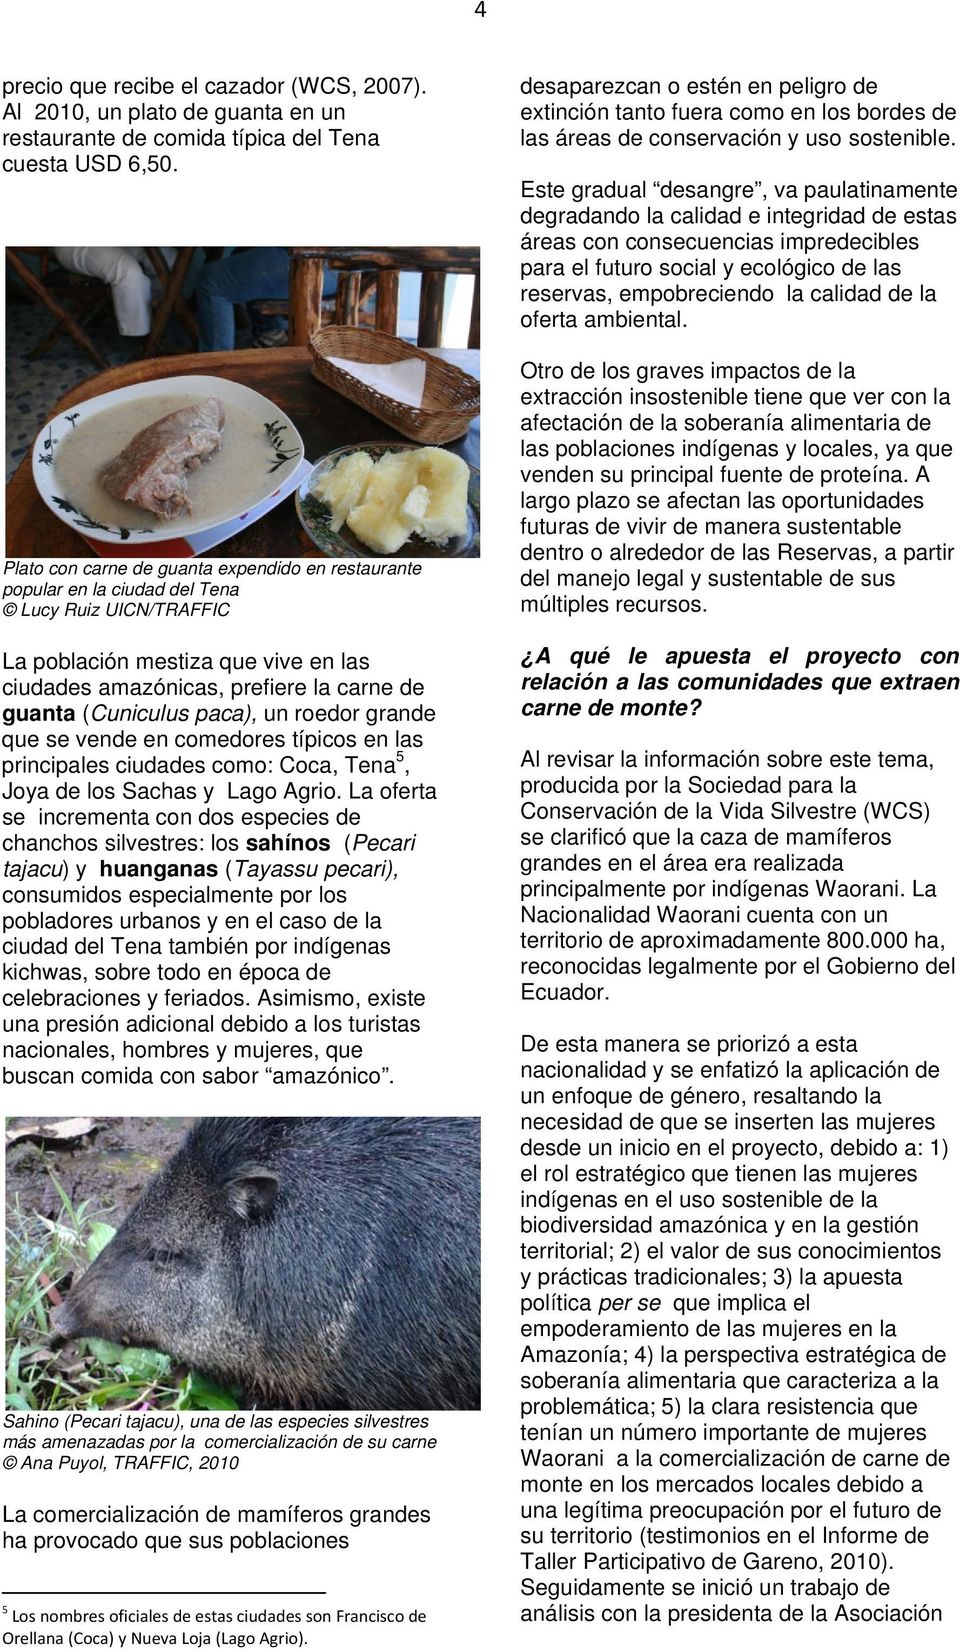 (Cuniculus paca), un roedor grande que se vende en comedores típicos en las principales ciudades como: Coca, Tena 5, Joya de los Sachas y Lago Agrio.